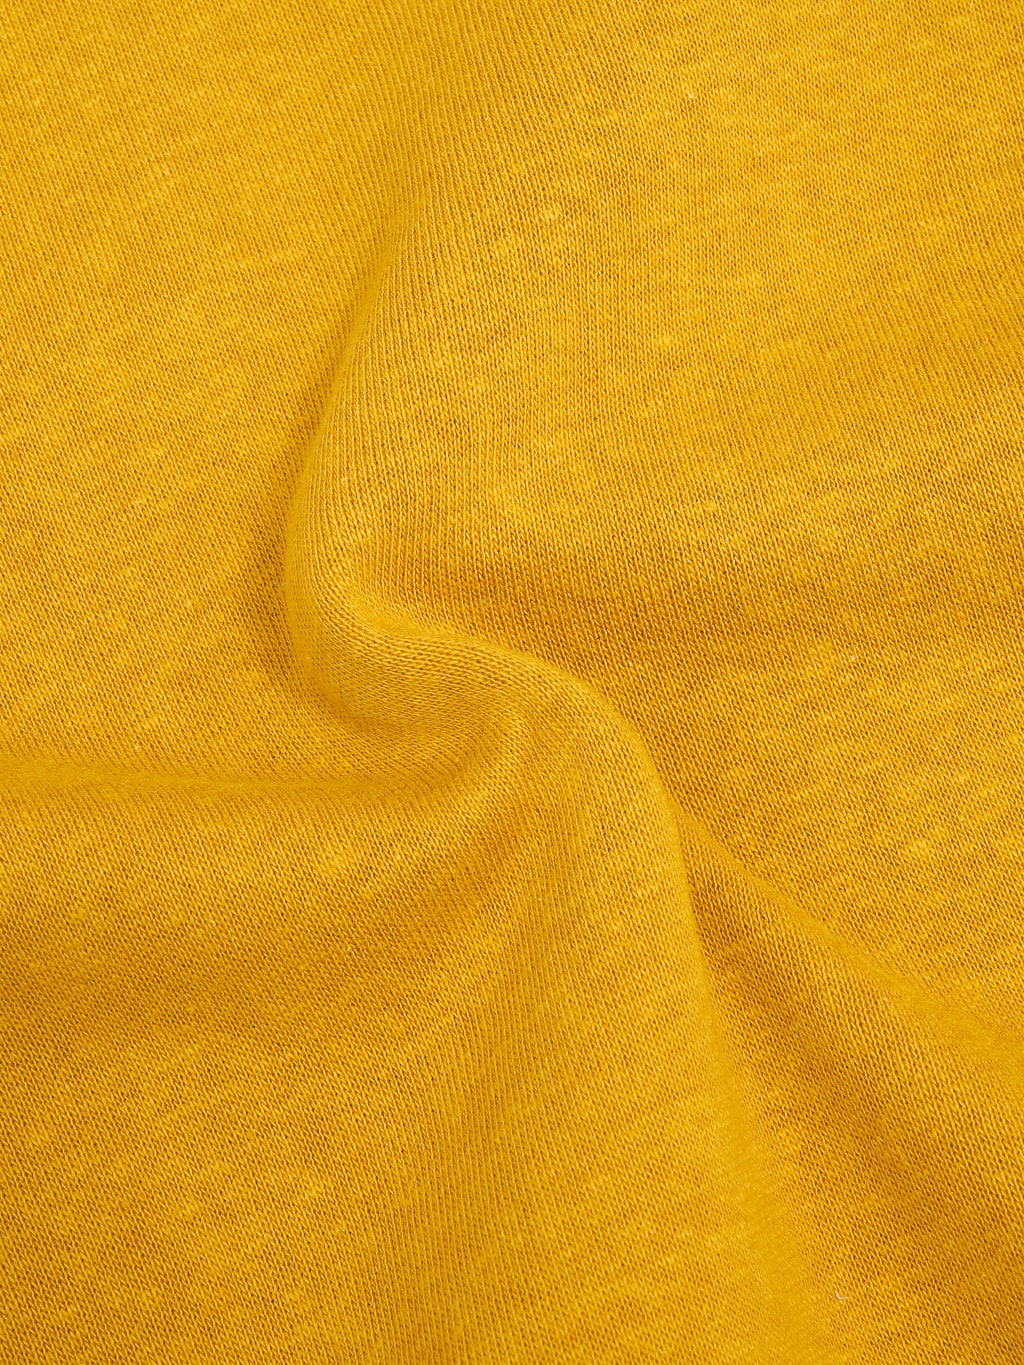 Denime By Warehouse & Co. "Lot. 261" 4-Needle Raglan Sweatshirt Yellow